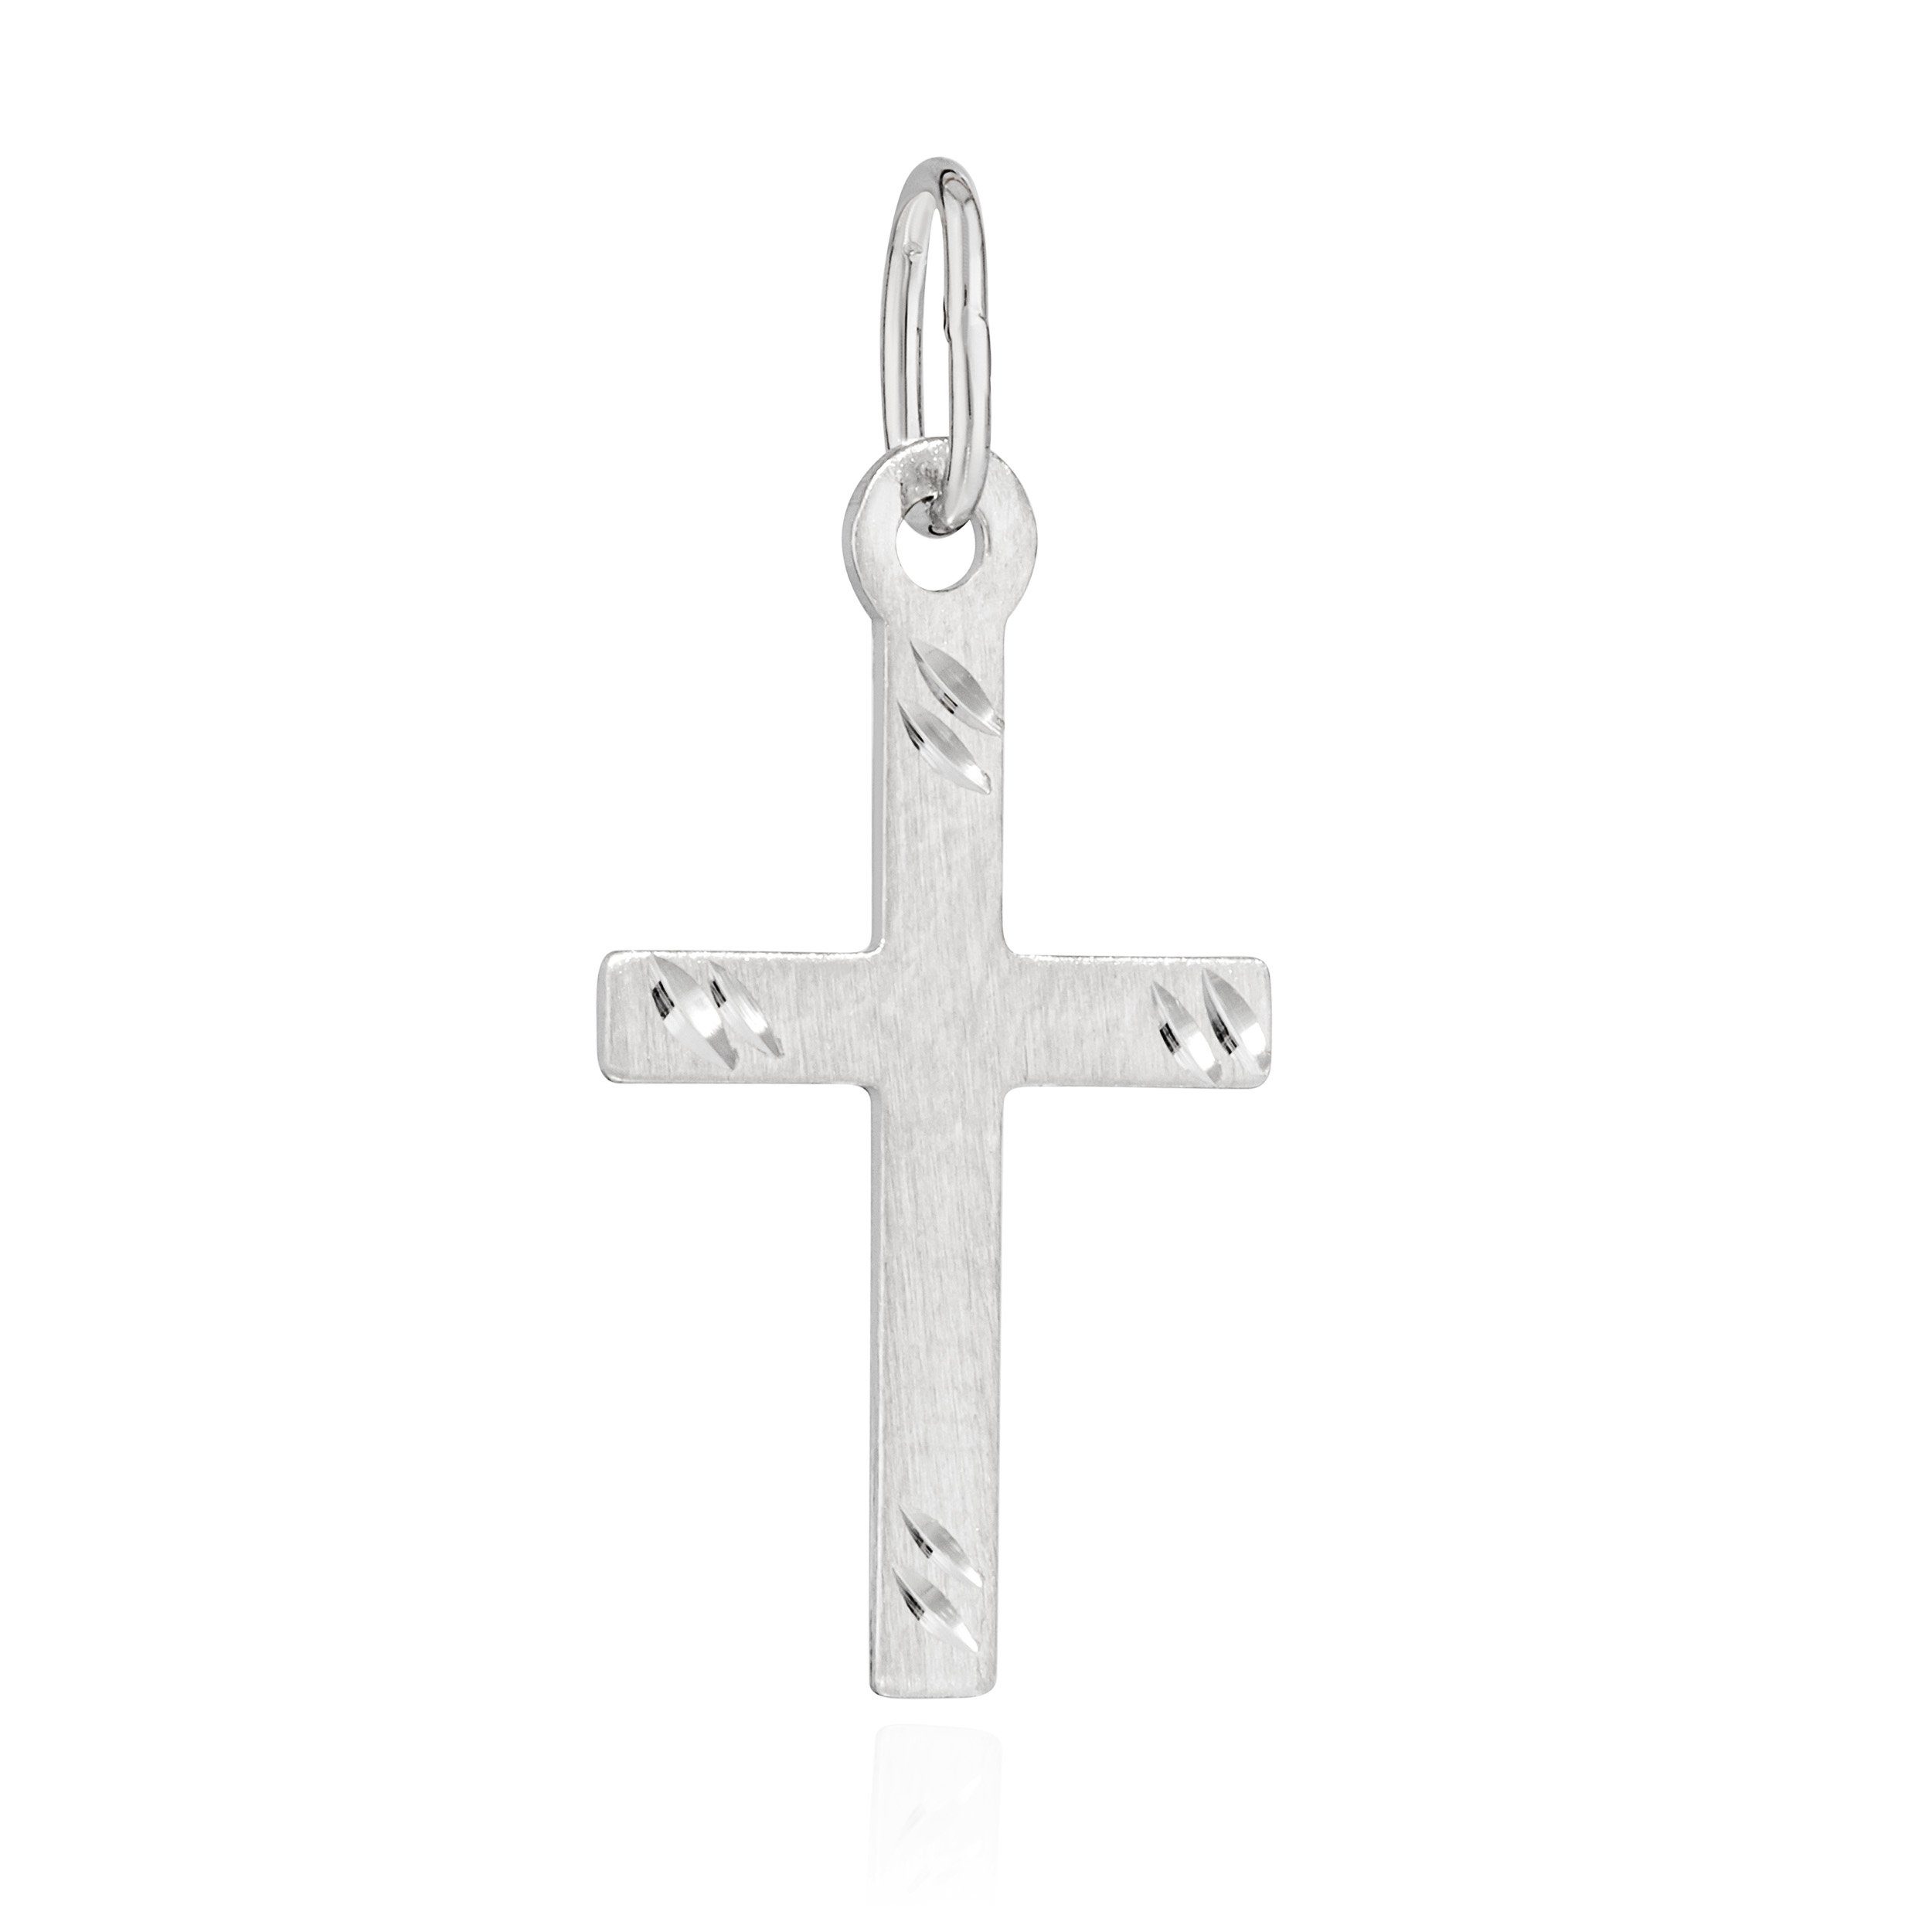 NKlaus Kettenanhänger Kettenanhänger Kreuz 925 Silber matt diamantiert 17x10mm Kruzfix Amule | Kettenanhänger